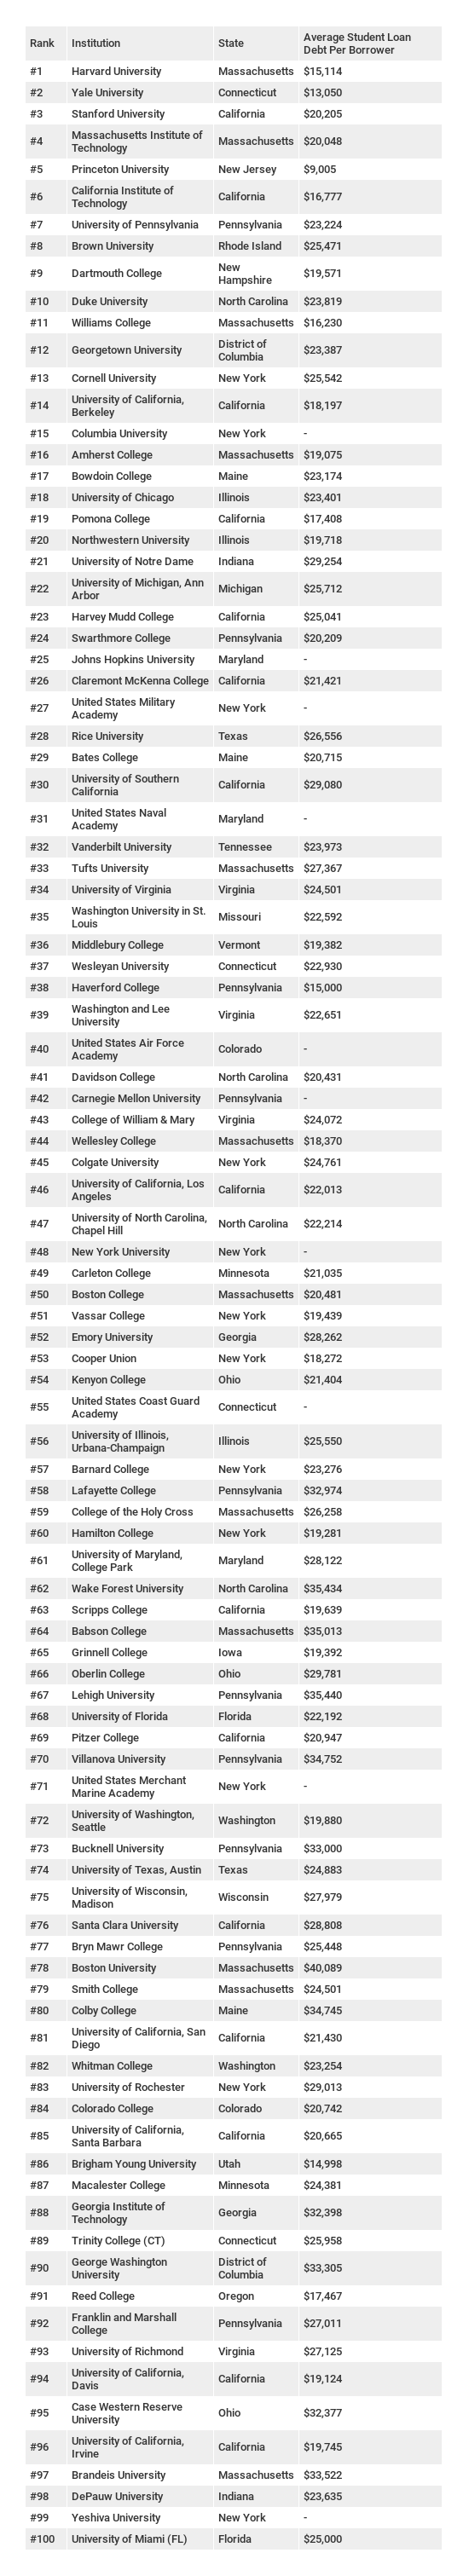 美国排名前100的大学(基于福布斯2018年排名)